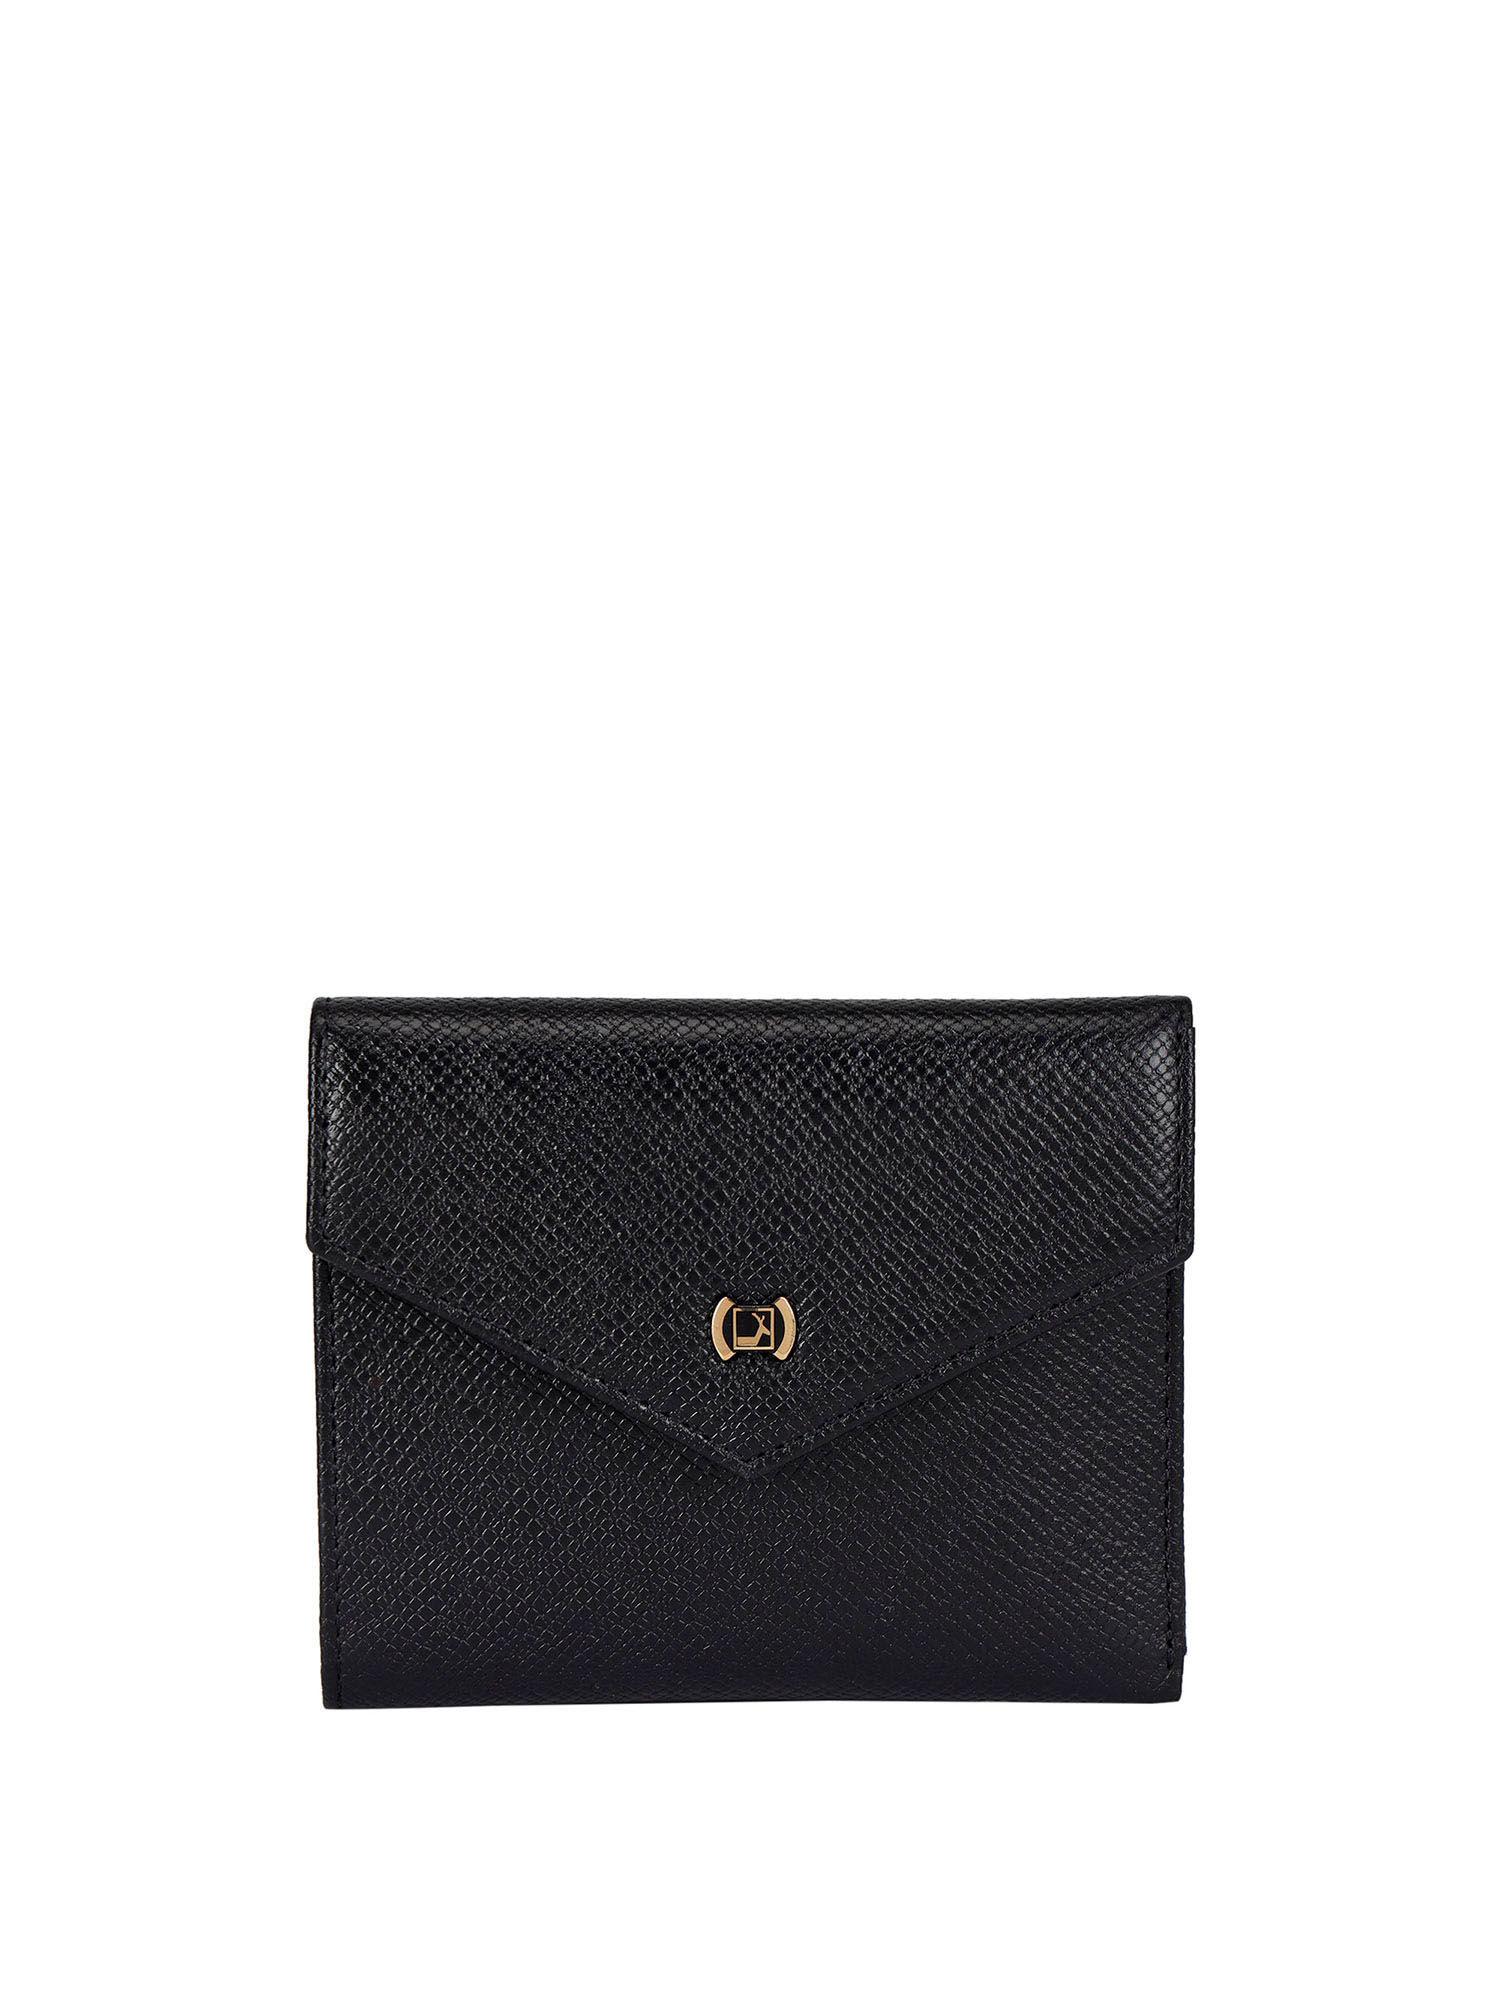 genuine leather black ladies wallet